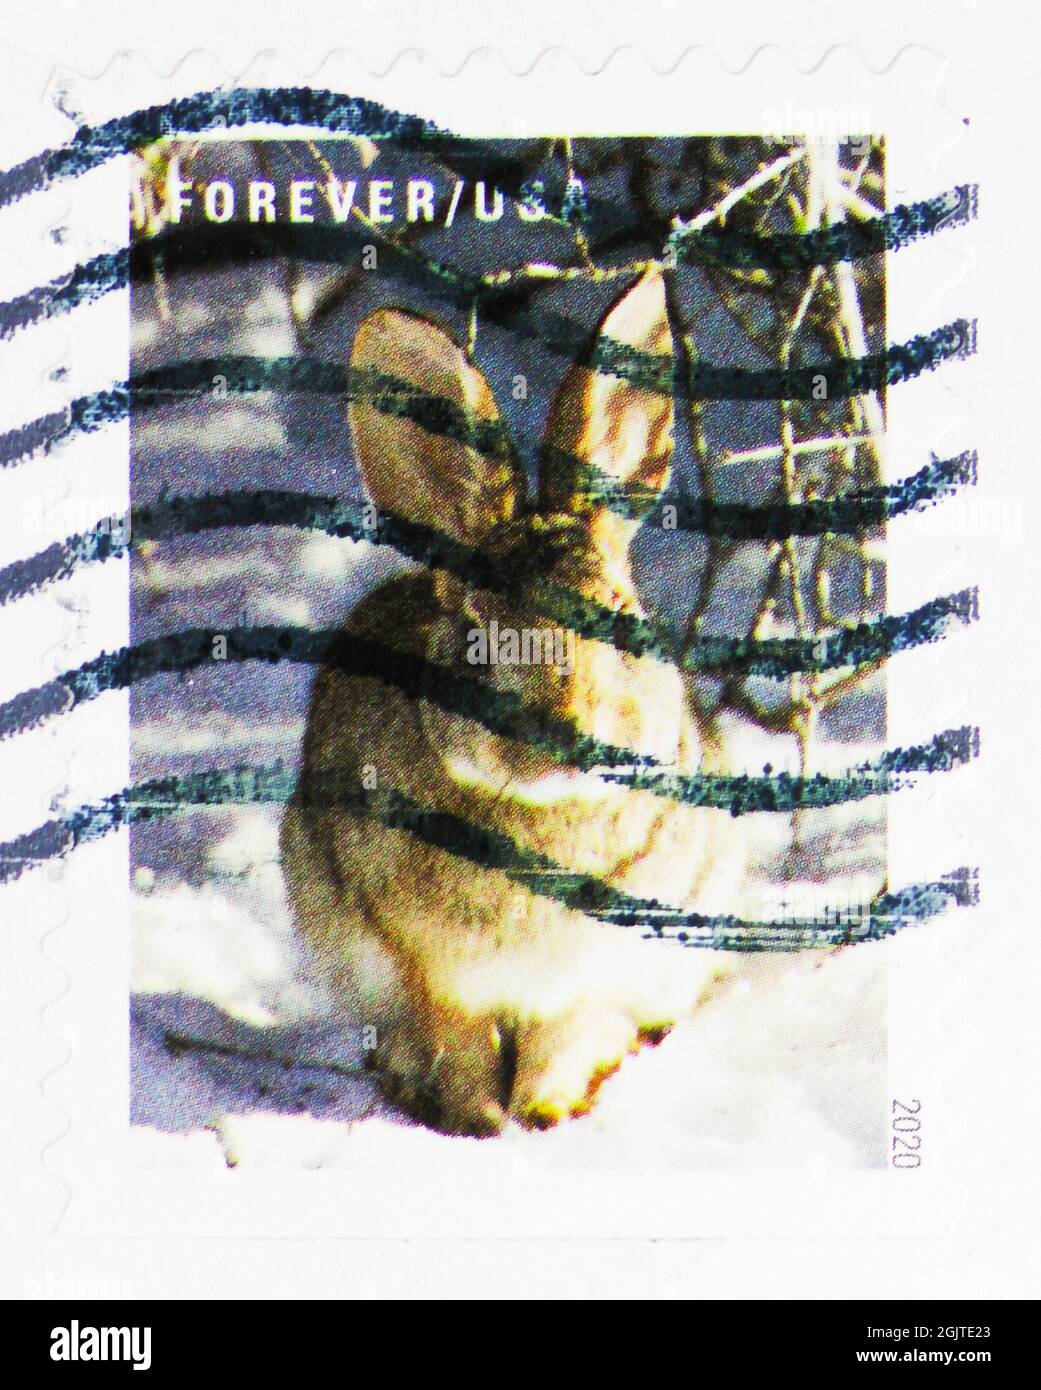 MOSKAU, RUSSLAND - 09. JUNI 2021: In den USA gedruckte Briefmarke zeigt Cottontail Rabbit (Sylvilagus sp.), Winterszenen (2020) Serie, um 2020 Stockfoto